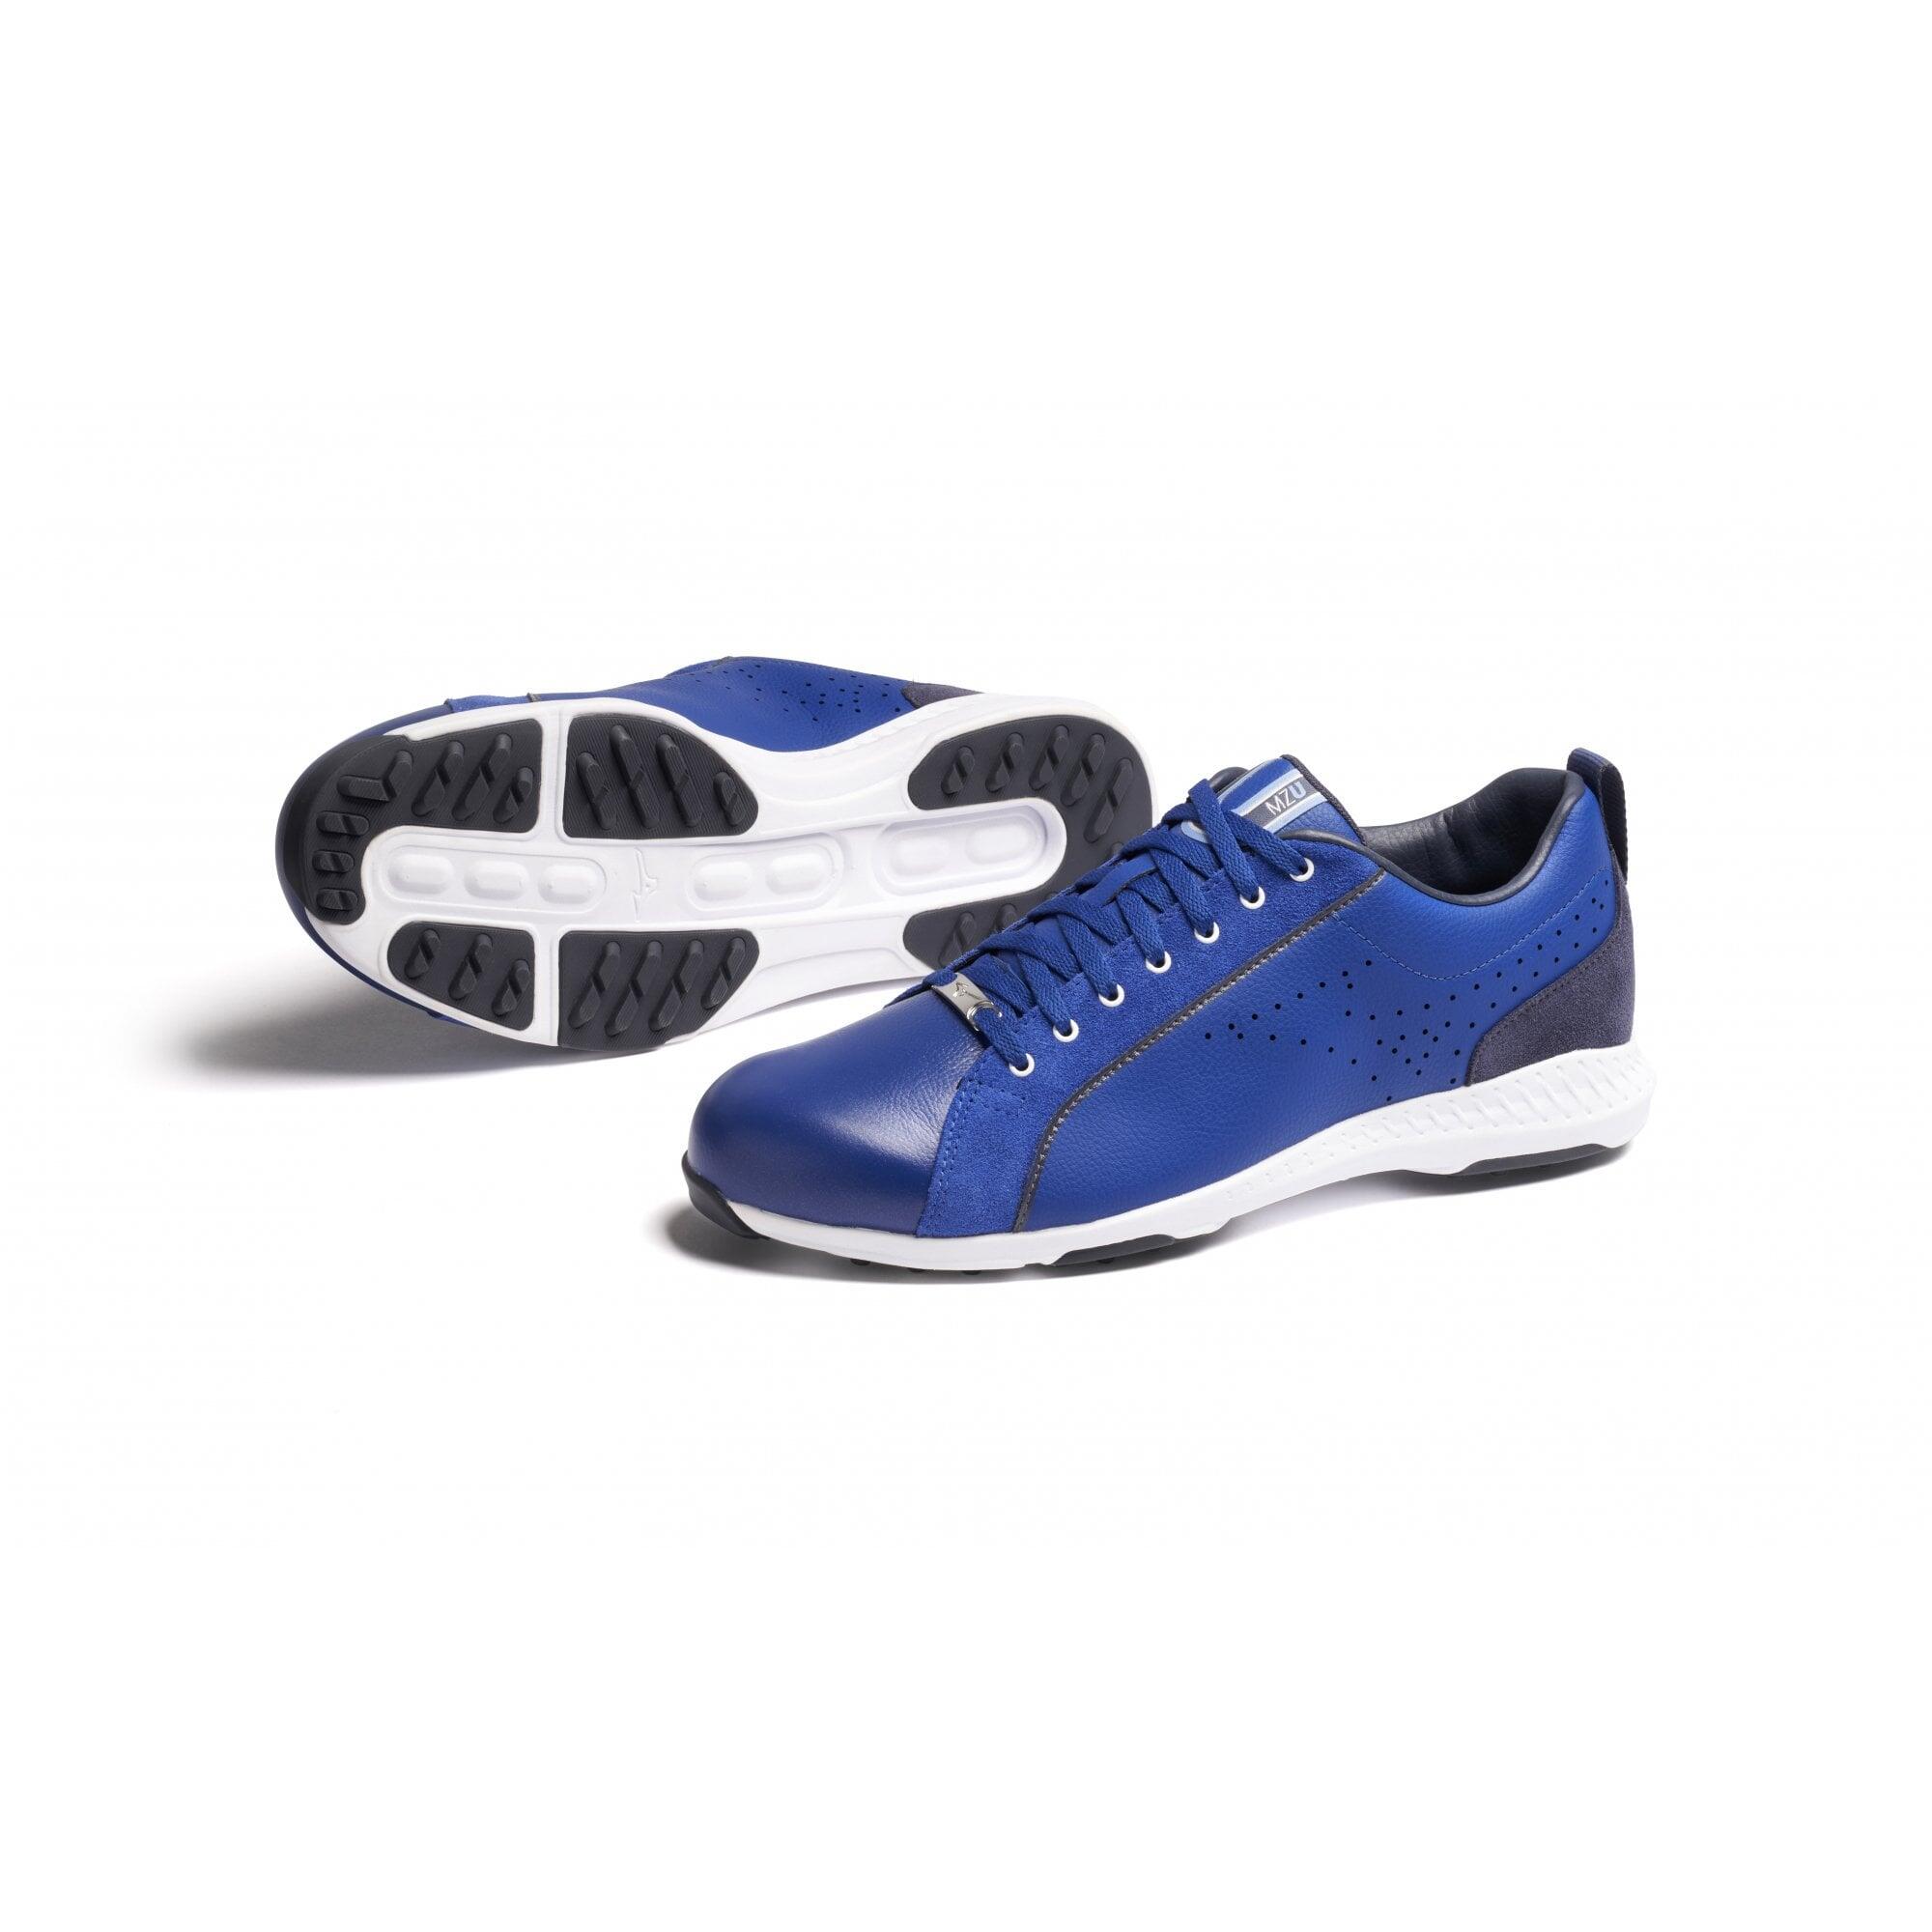 Mizuno MZU LE Golf Shoes - Navy 2/6